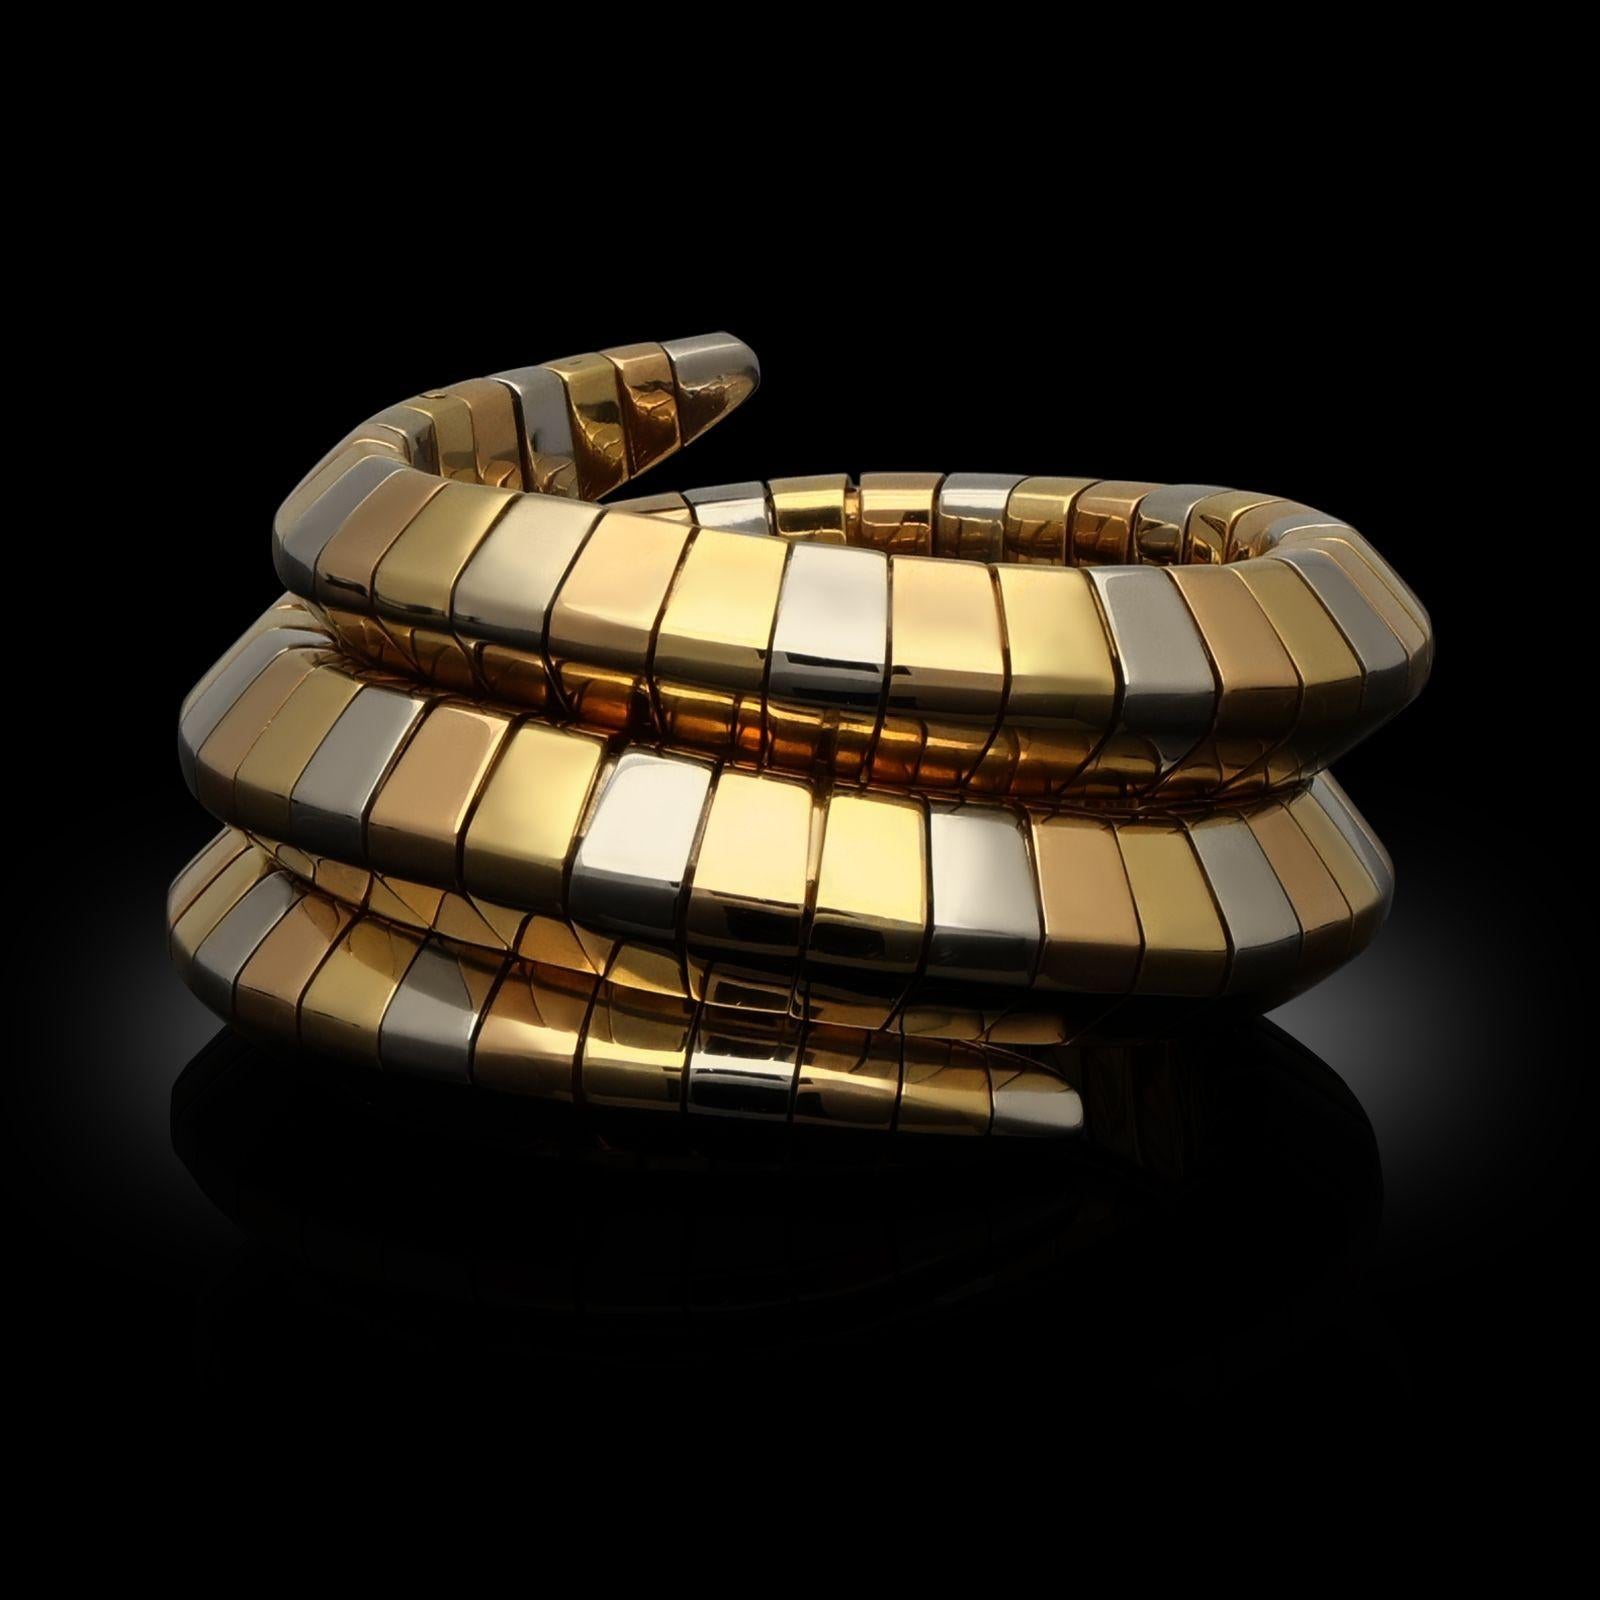 Dreifarbiges Goldarmband Serpenti Tubogas von Bulgari, 1990er Jahre. Das Manschettenarmband aus dreifarbigem 18-karätigem Gold ist ein hochflexibles Tubogas-Design, das sich um das Handgelenk legt und ein sanft gewölbtes, pyramidenförmiges Profil